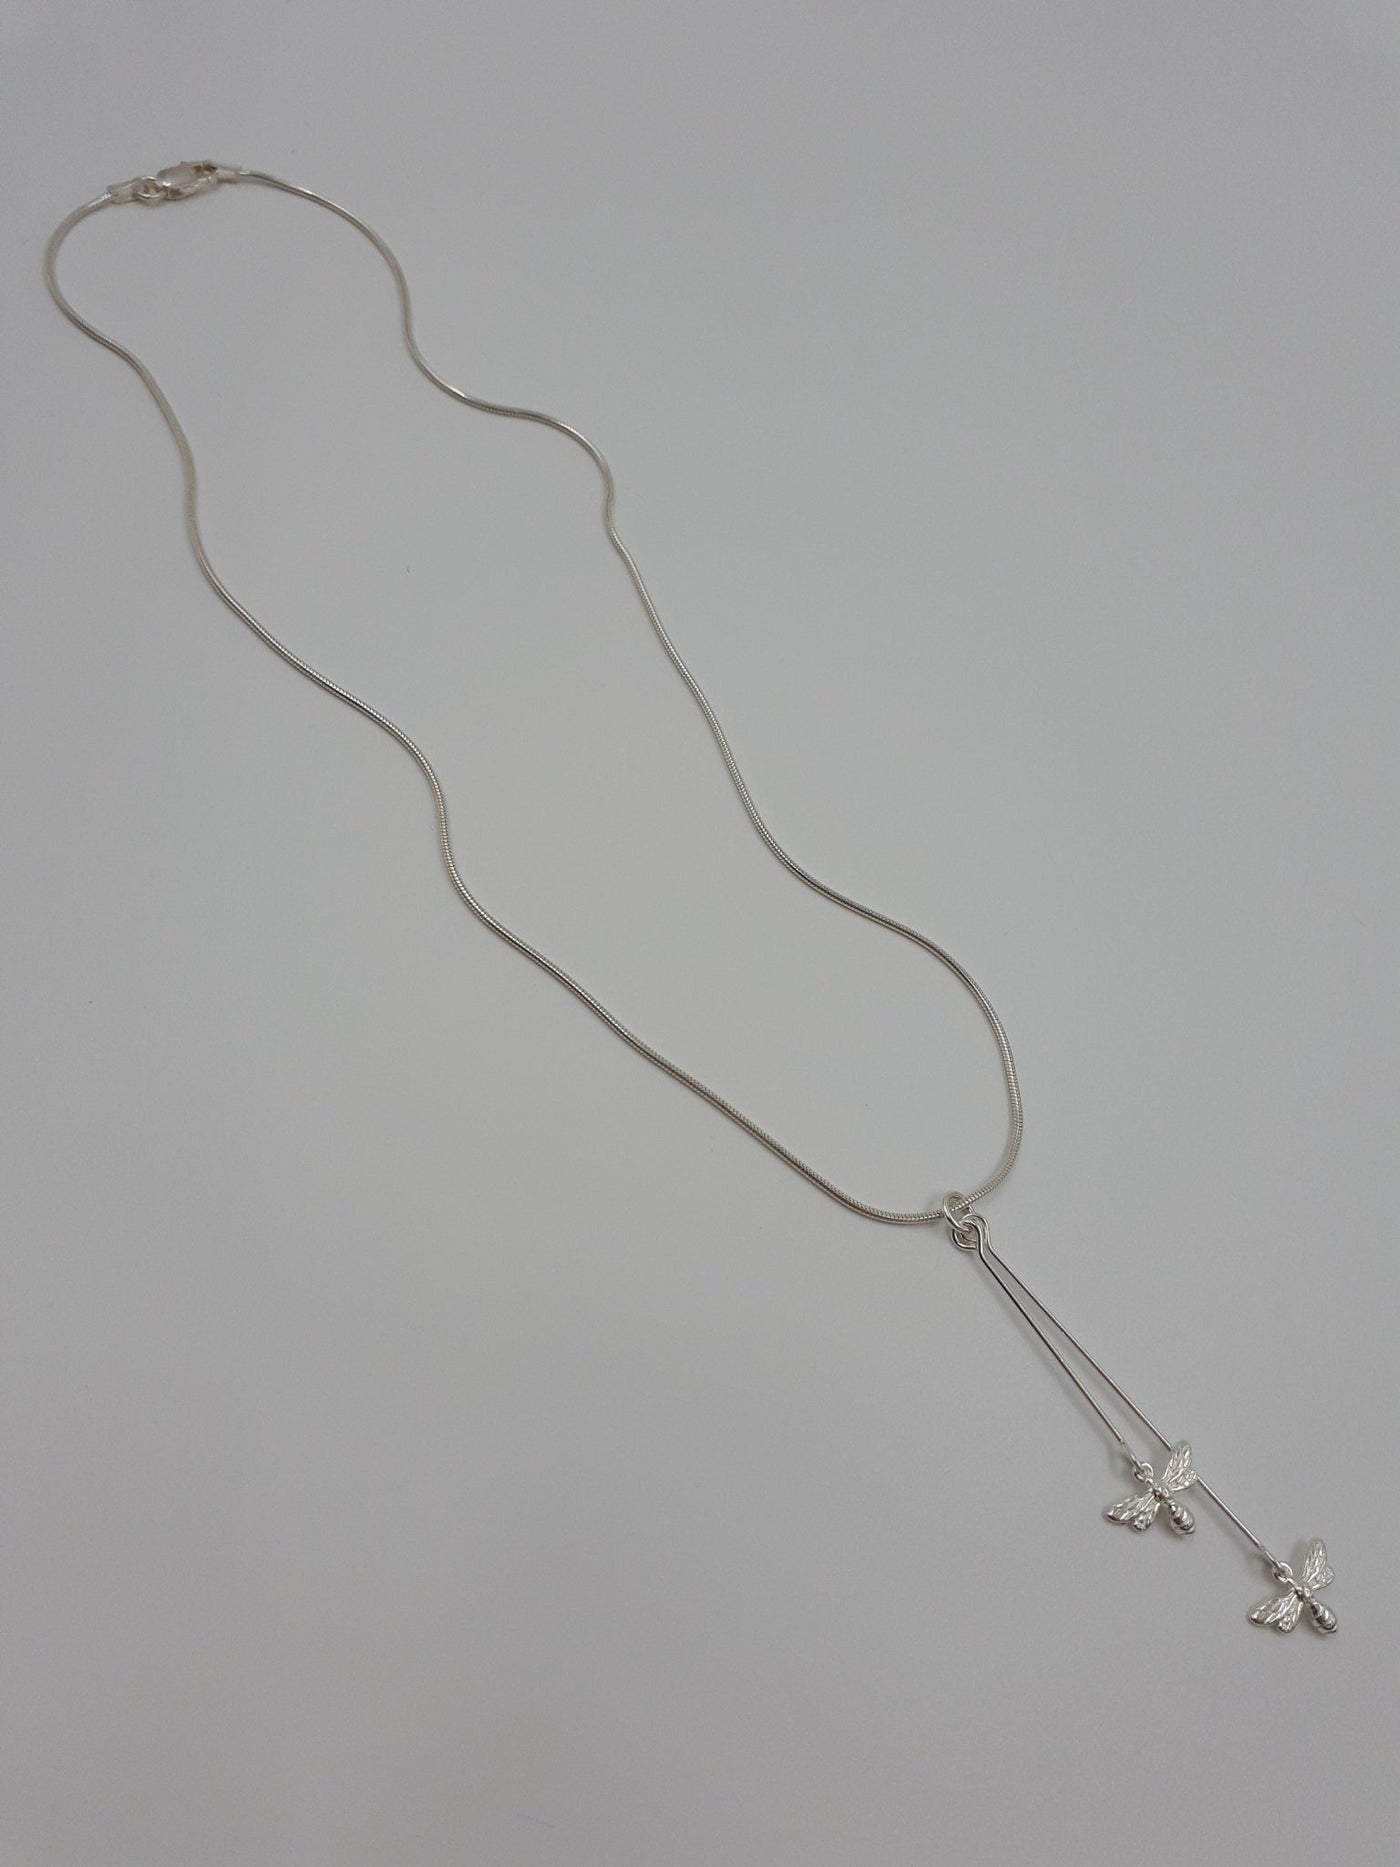 925 Sterling Silver Double Bee Long Drop Necklace. - JOANNE MASSEY ARTISAN JEWELLERY